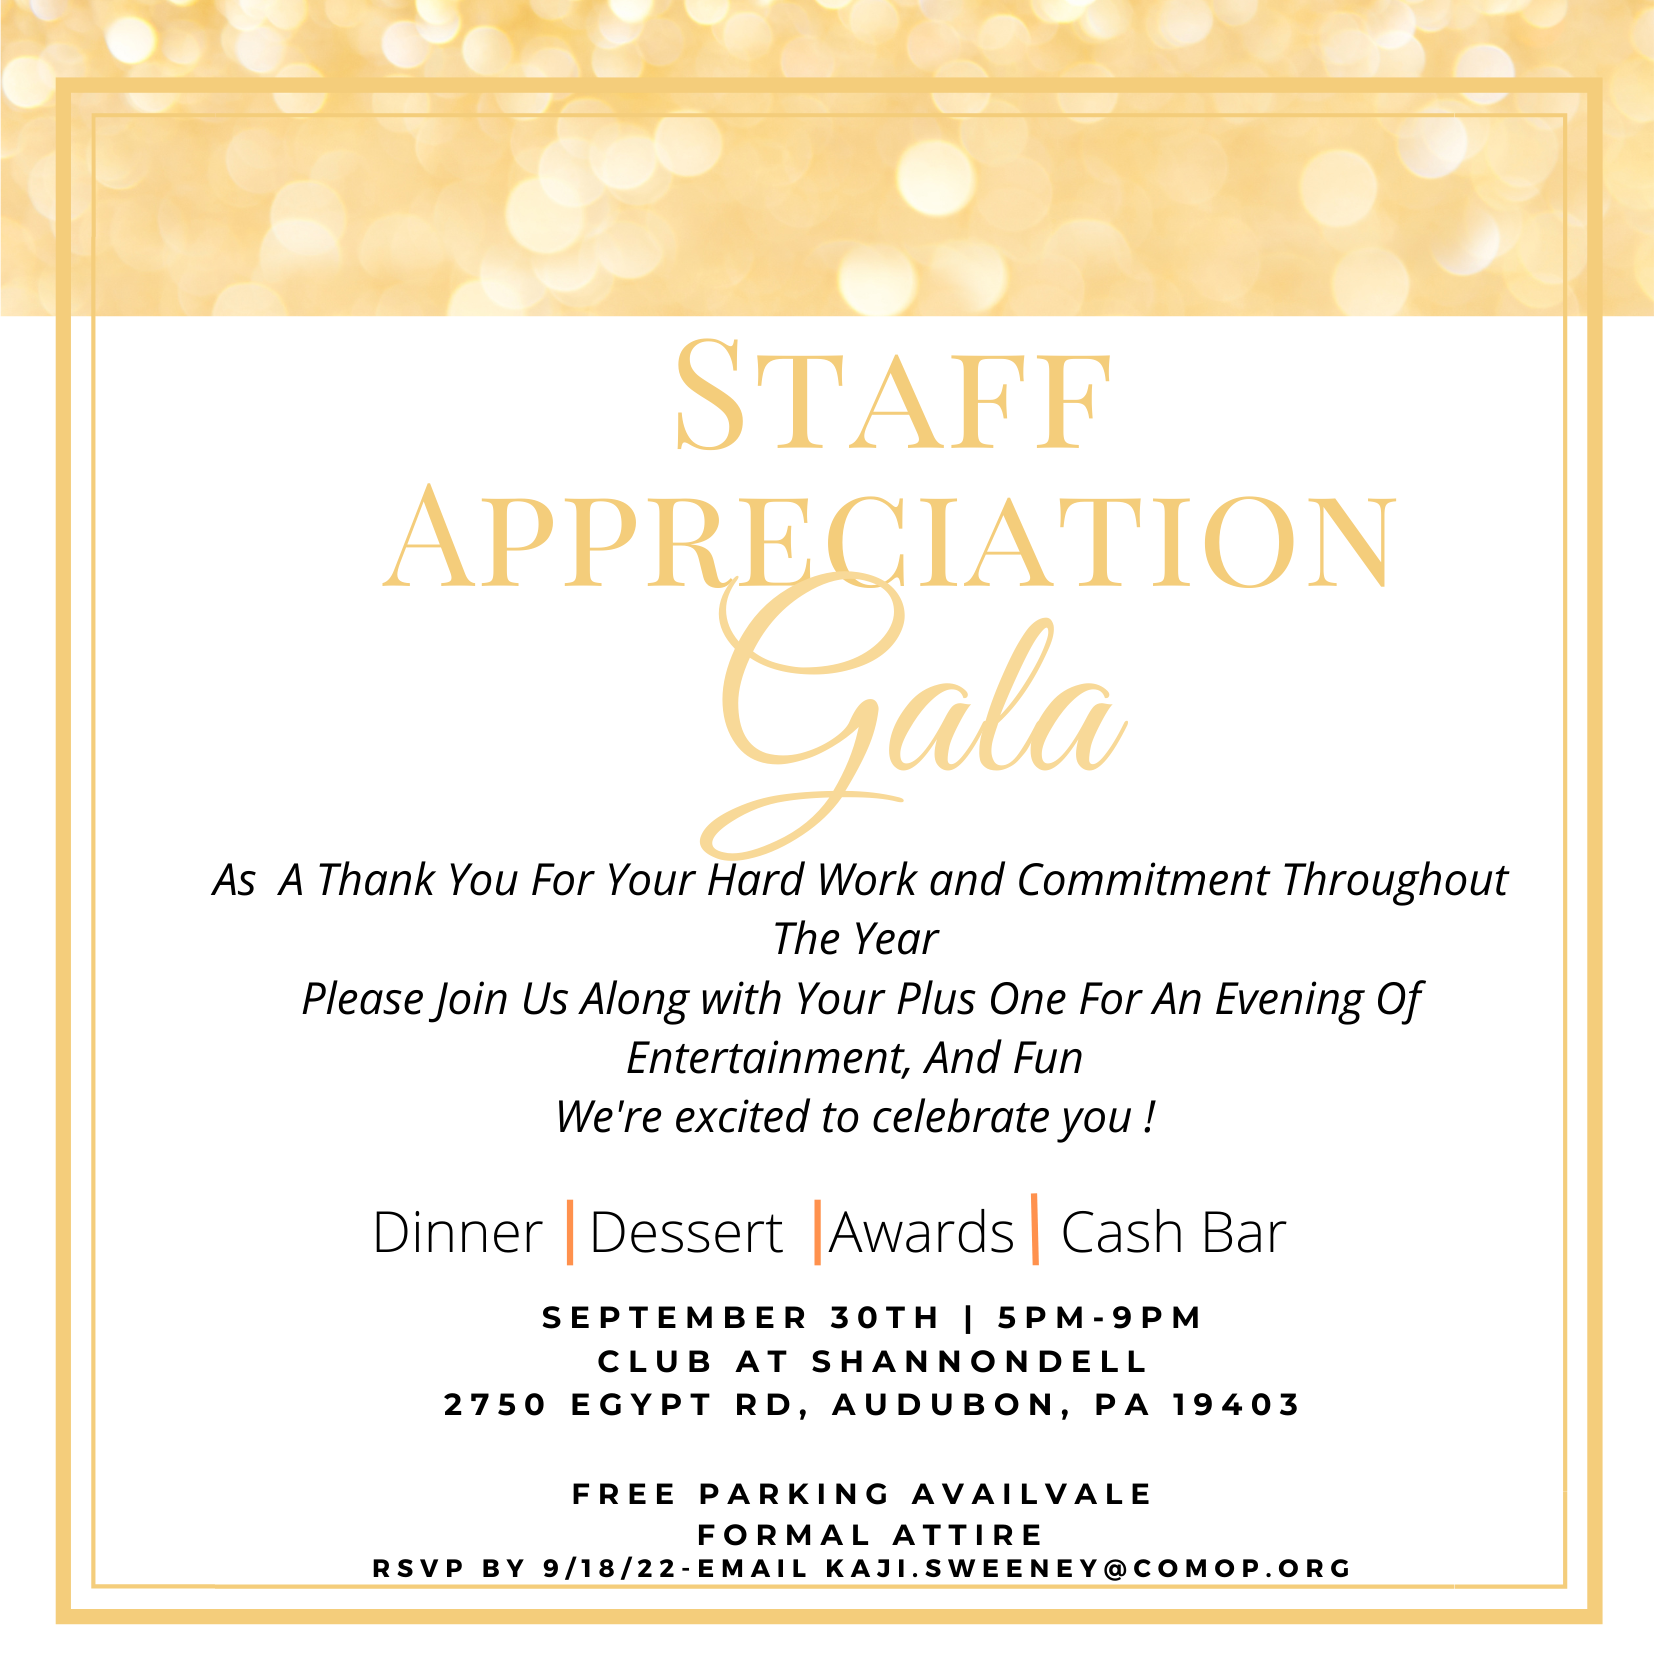 Staff Appreciation gala 2022